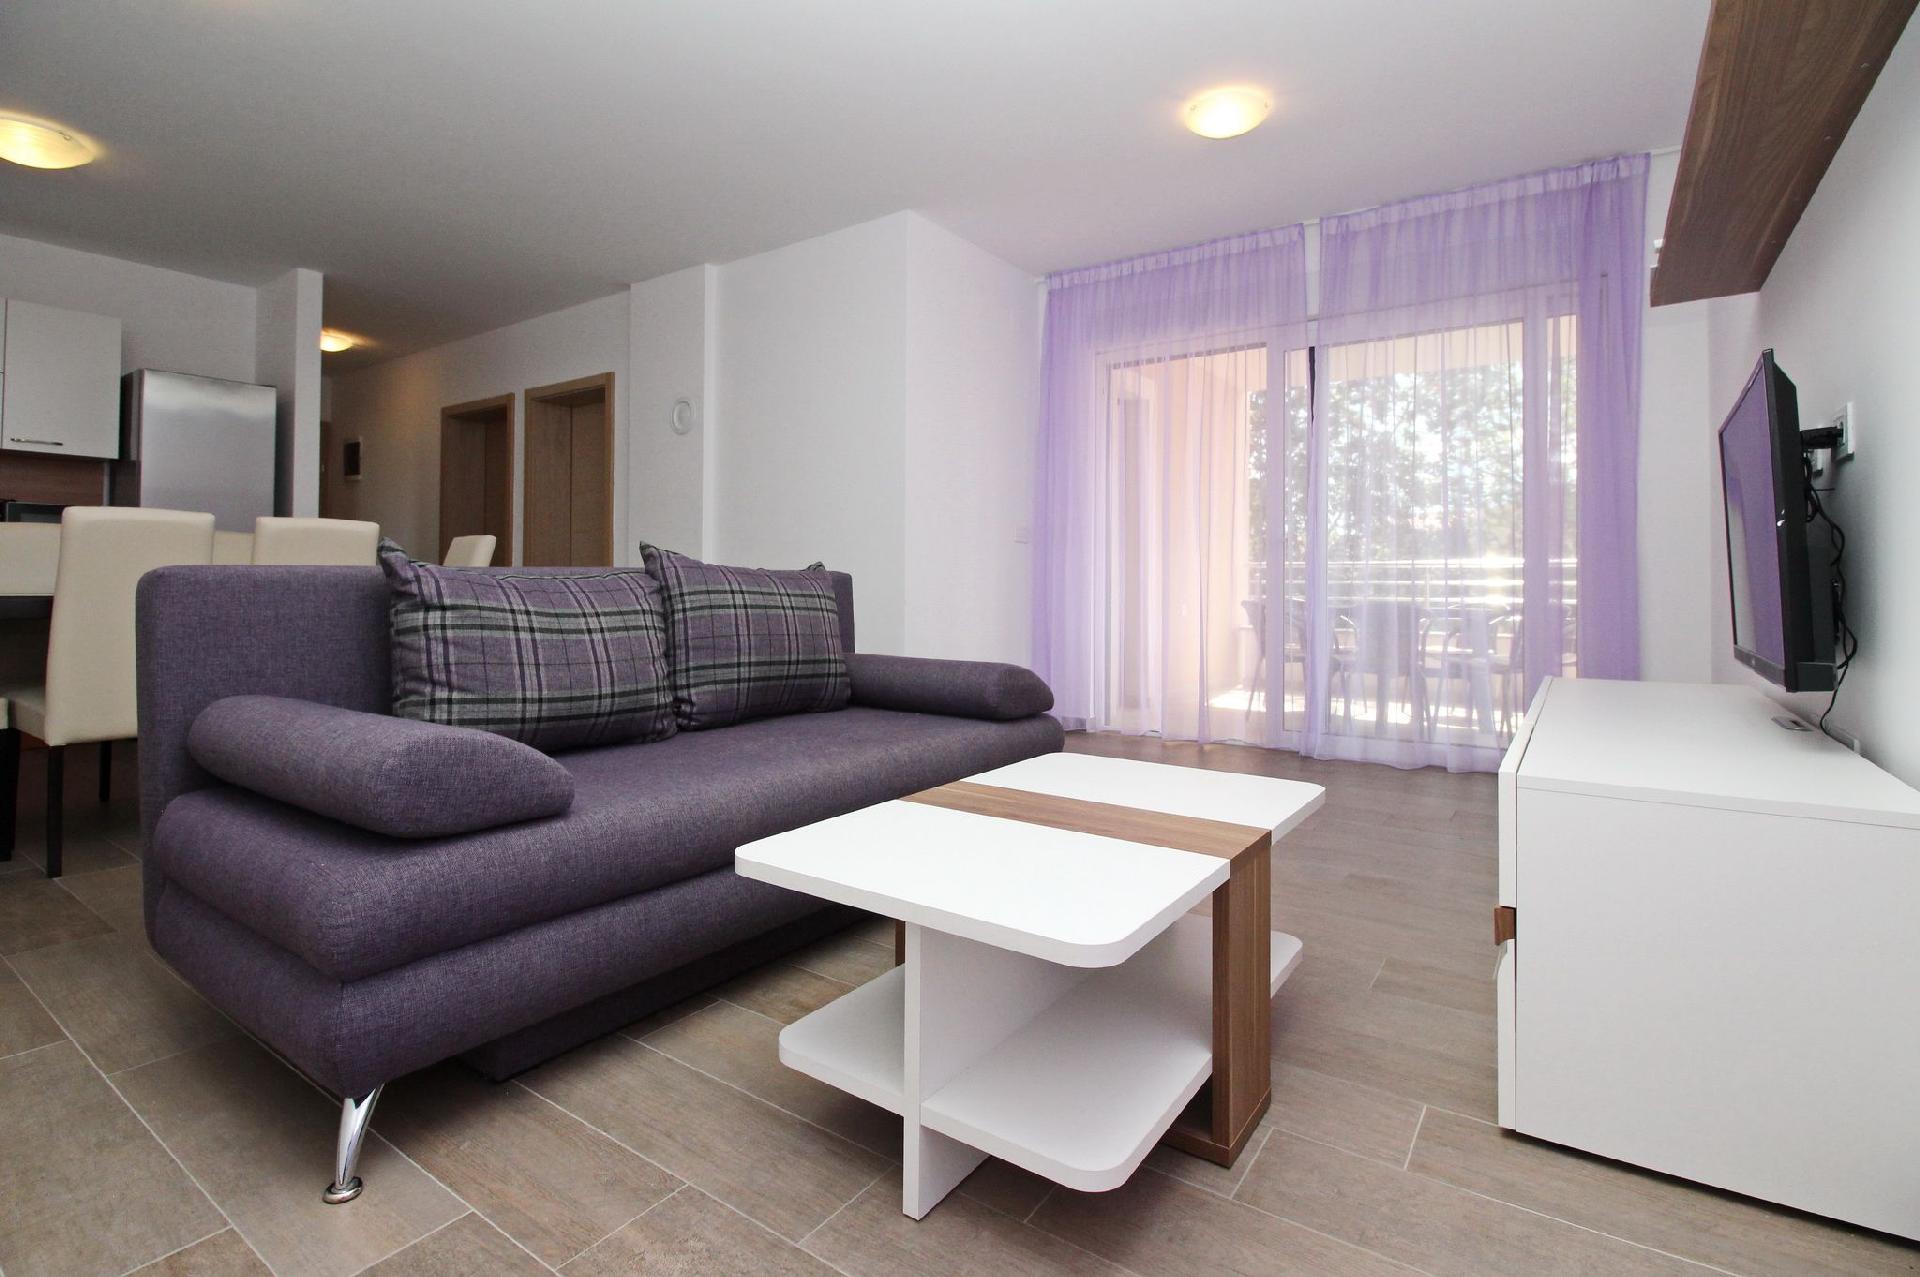 Modern und bequem eingerichtete Apartment für Ferienhaus in Kroatien